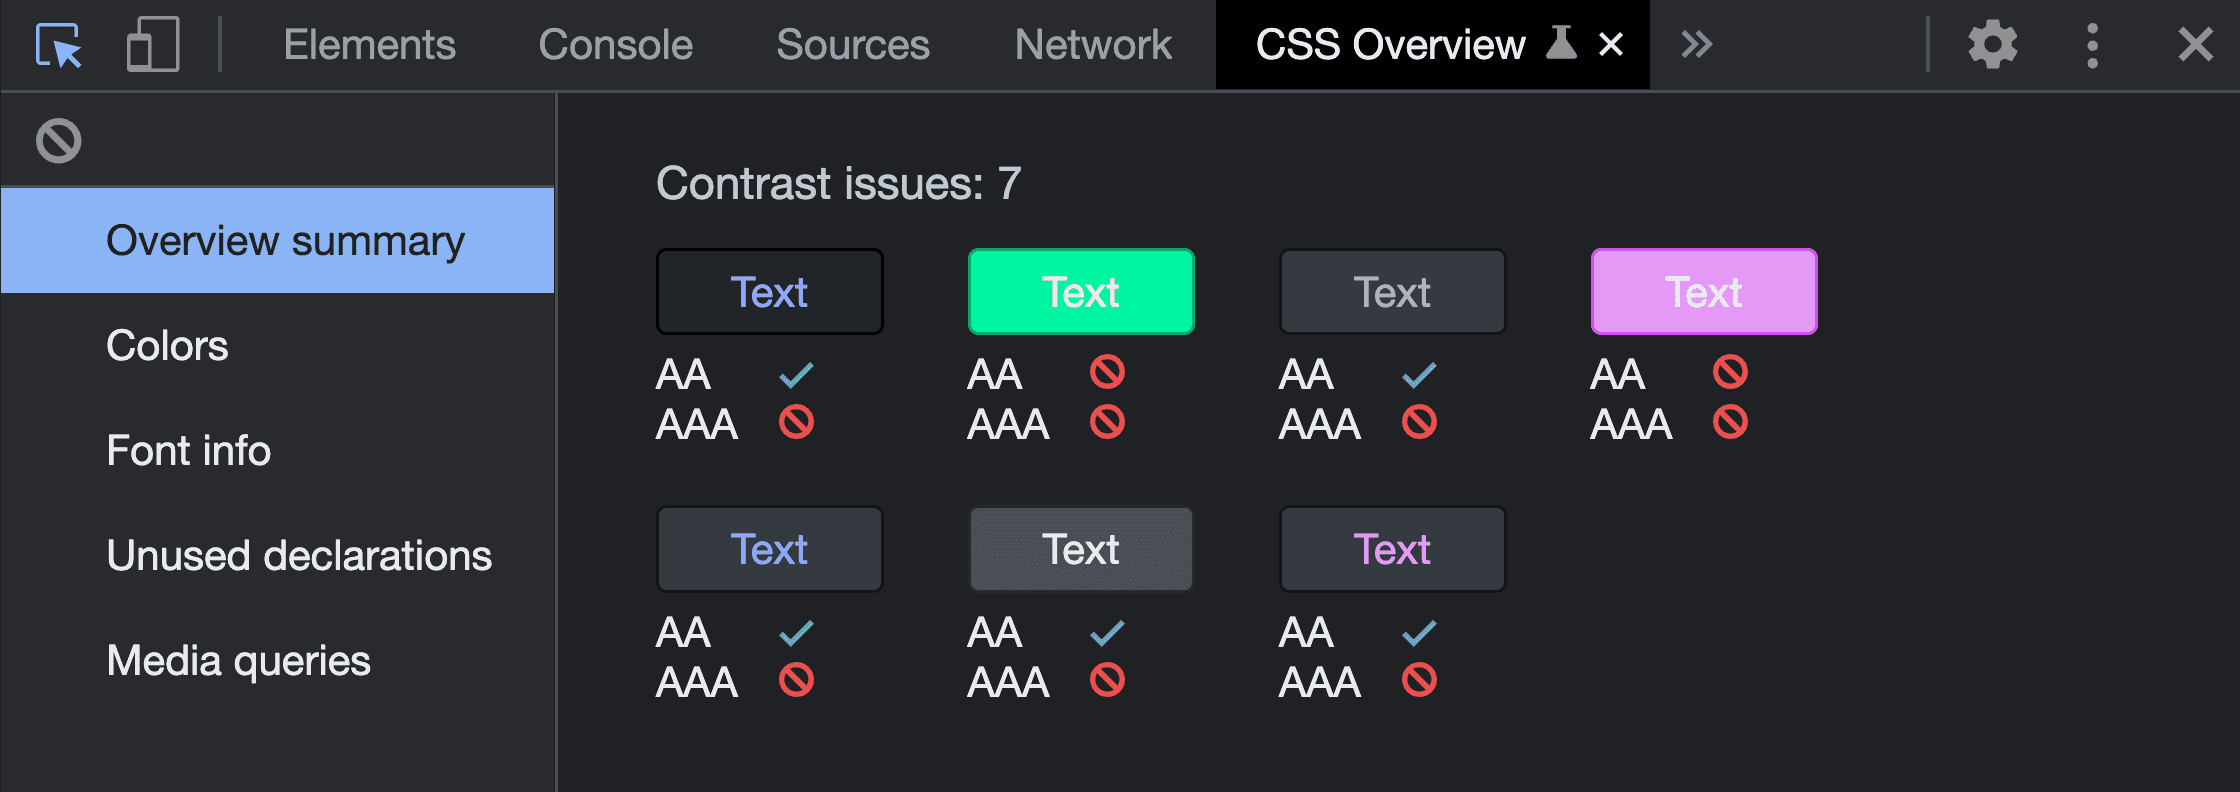 執行 CSS 總覽擷取工具的「總覽」摘要螢幕截圖。其中顯示 7 個對比問題，顯示發現的色彩配對和失敗結果。